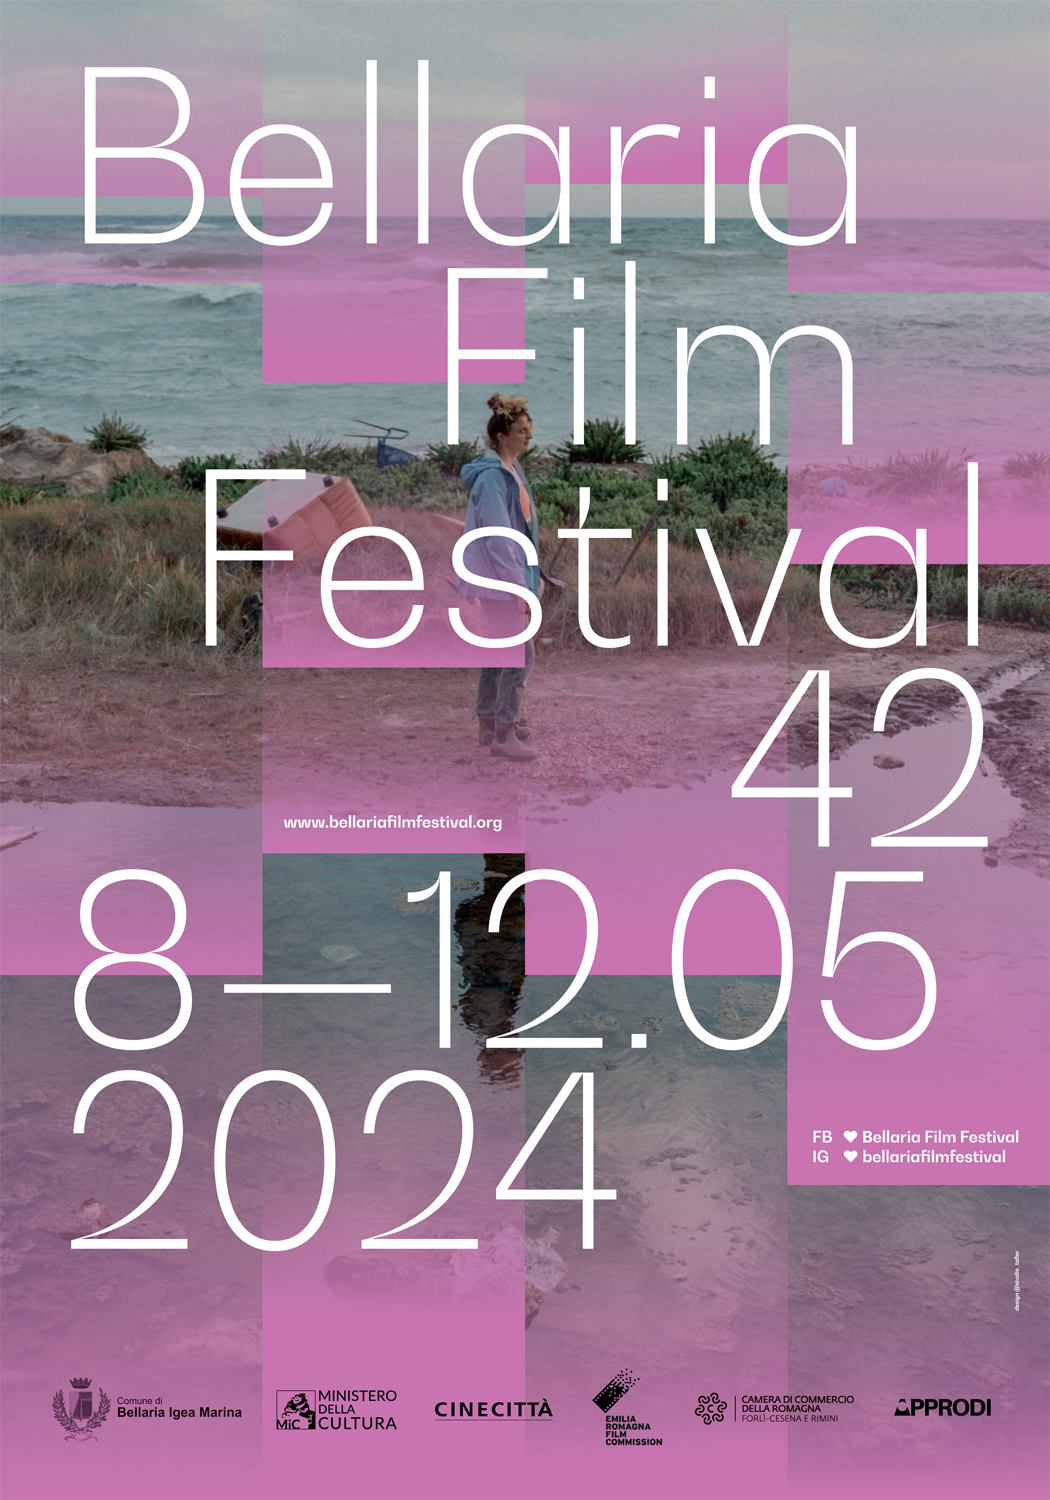 Bellaria Film Festival, il programma della 42.ma edizione del festival del cinema indipendente italiano